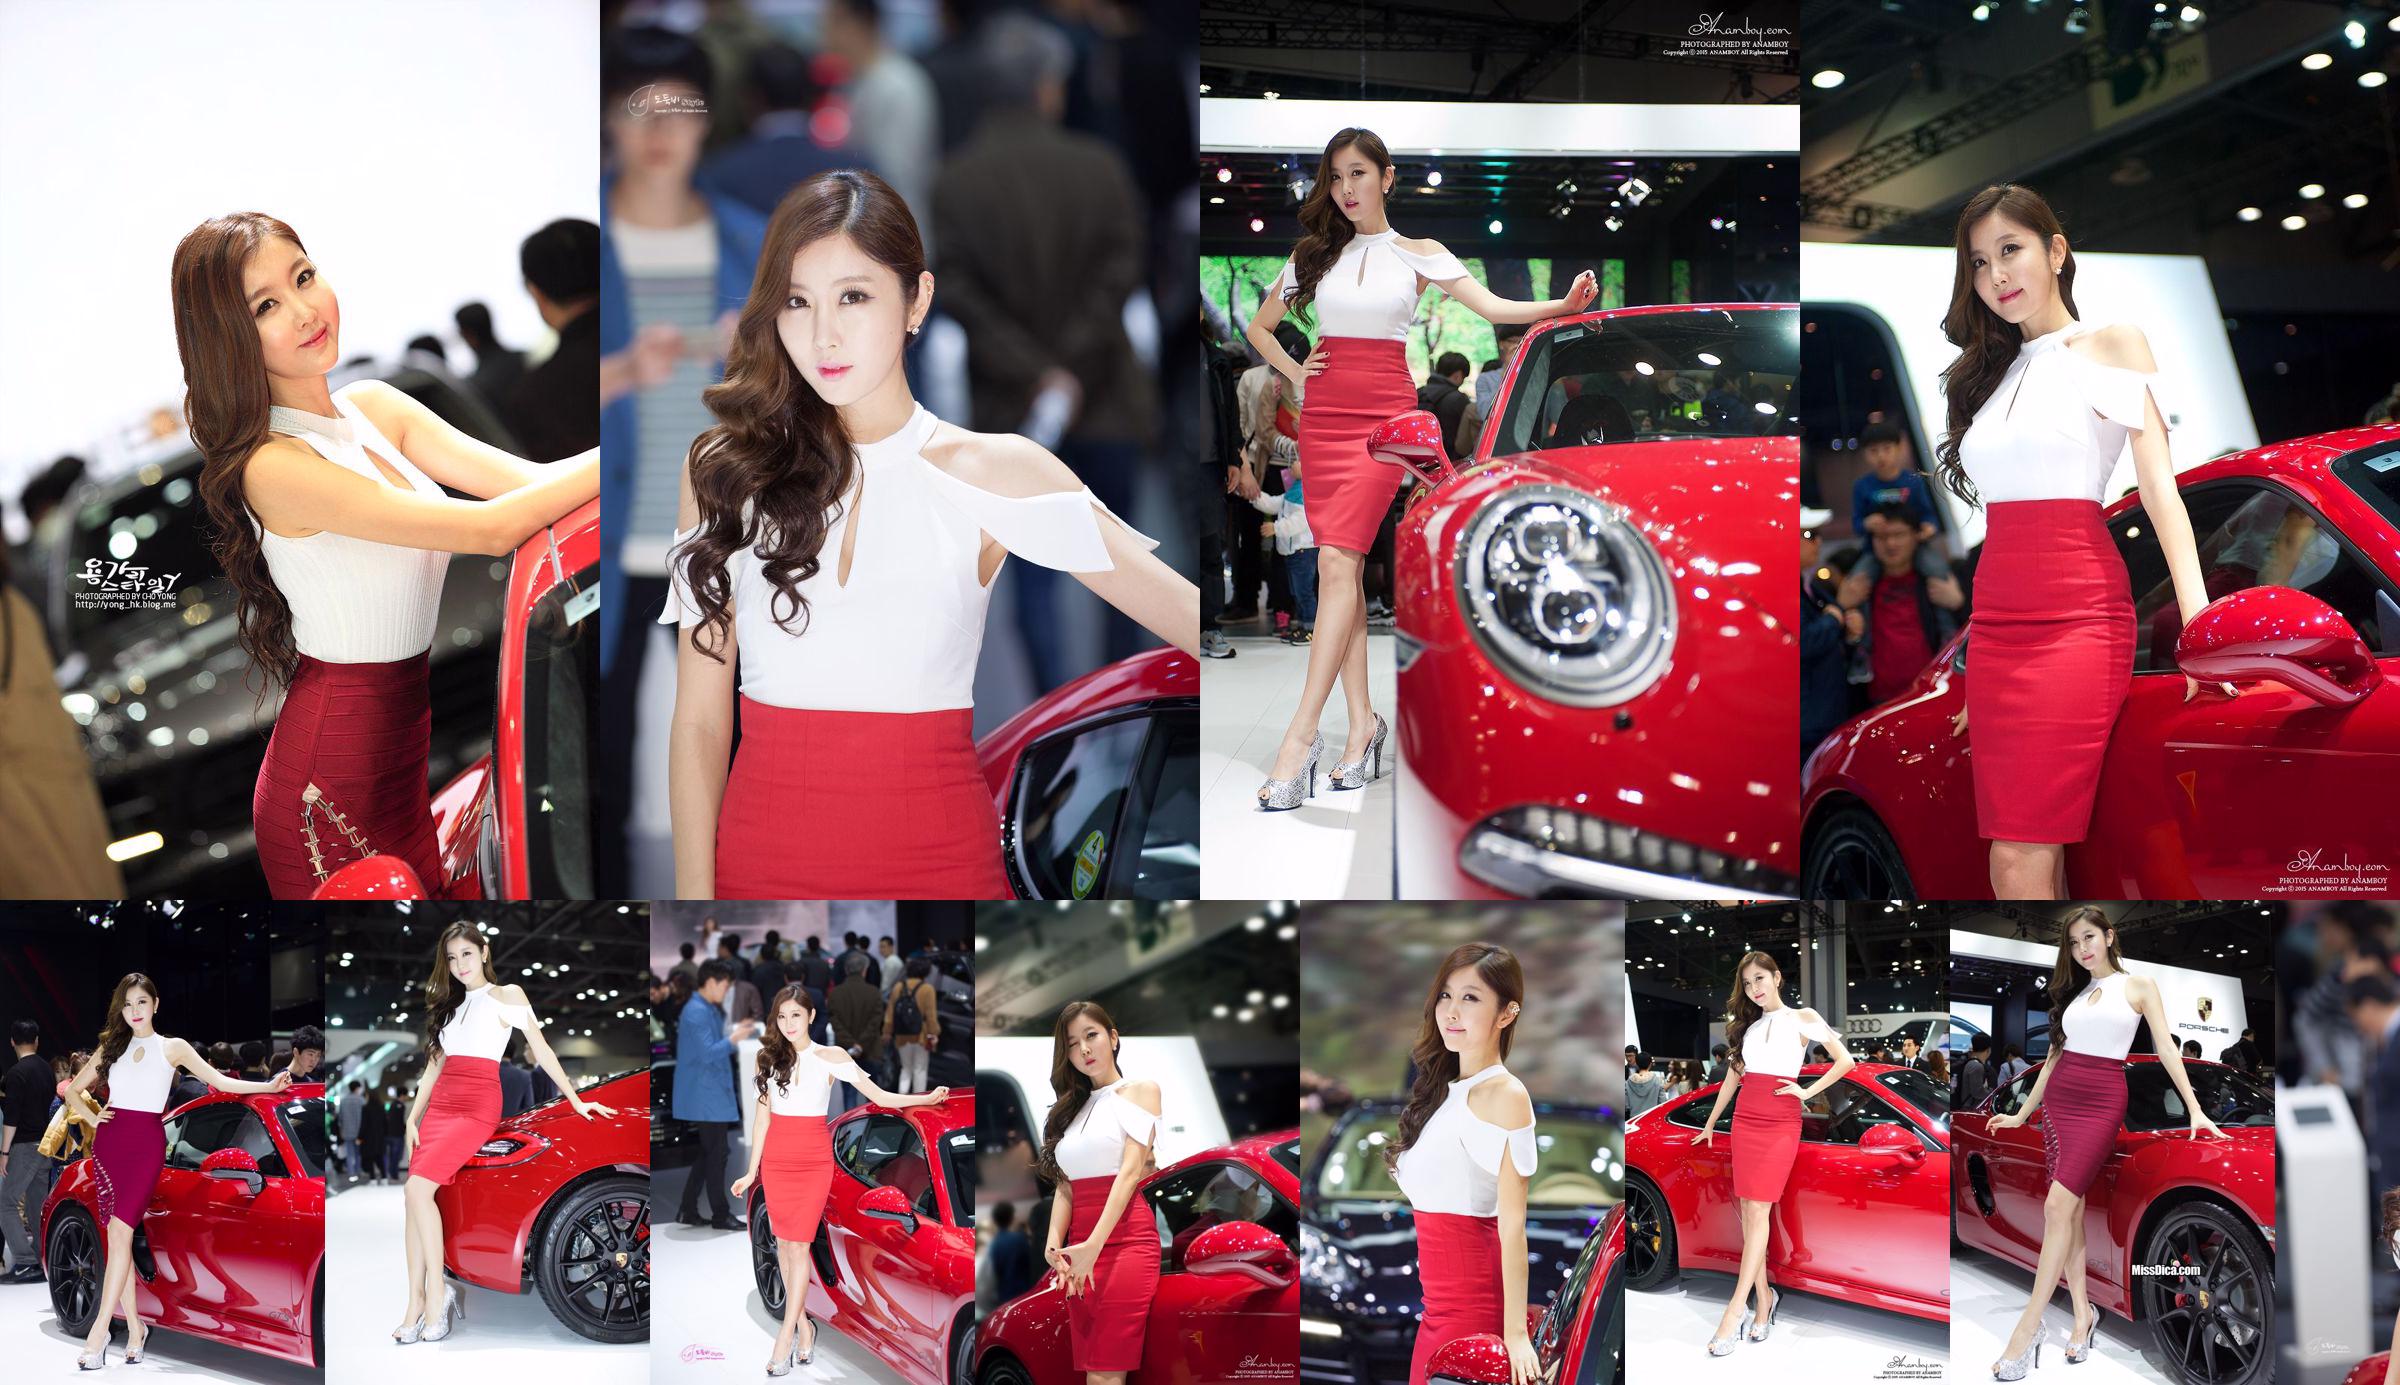 Colección de fotos del modelo de automóvil coreano Cui Xingya / Cui Xinger "Serie de faldas rojas en el Auto Show" No.5e4f73 Página 1